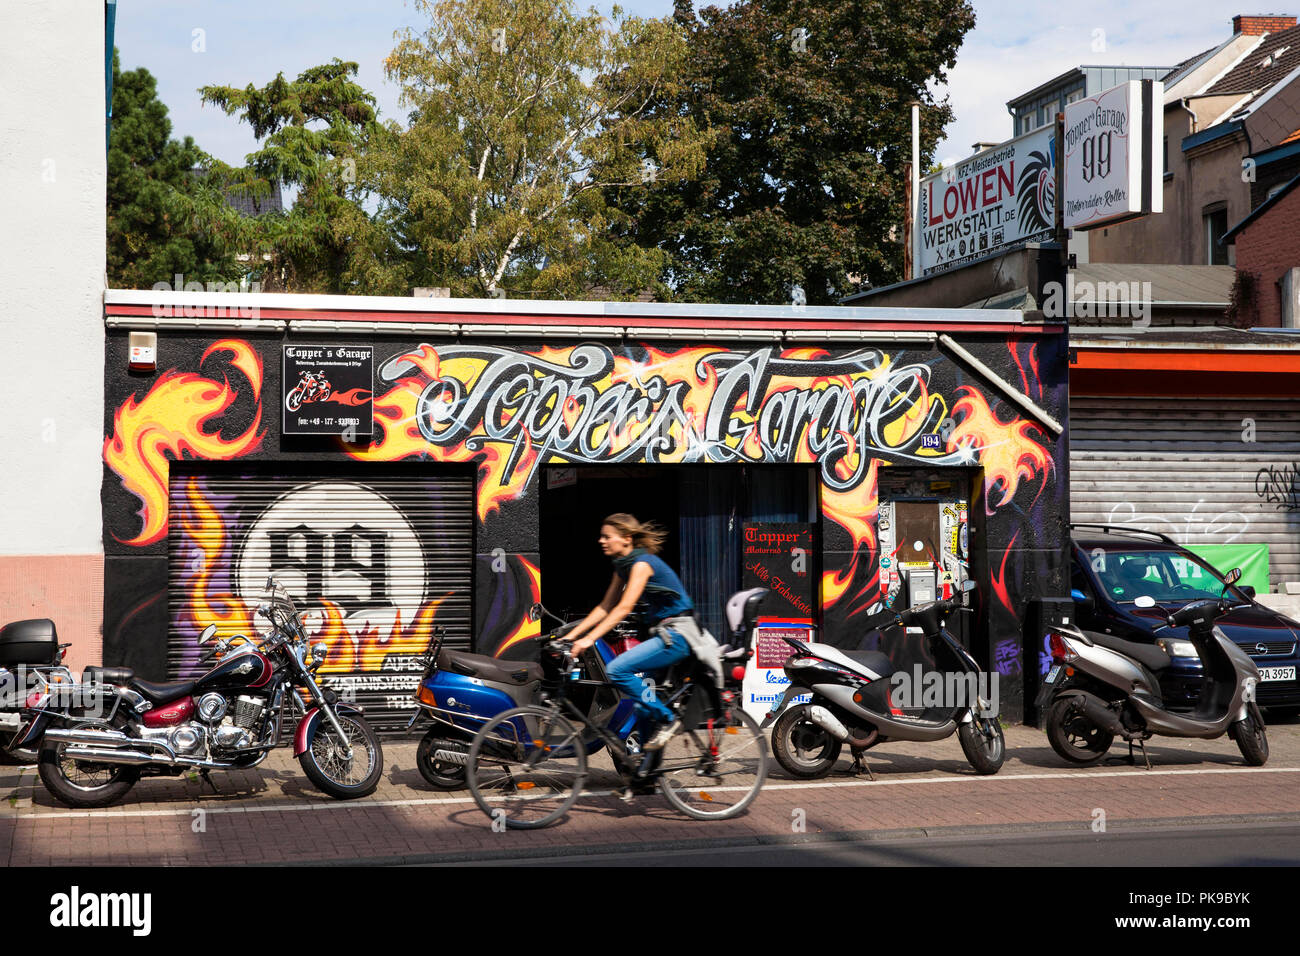 Motorrad's Garage Topper Garage auf die Subbelrather Straße im Stadtteil Ehrenfeld, Köln, Deutschland. Motorrad Werkstatt Topper's Garage an der S Stockfoto